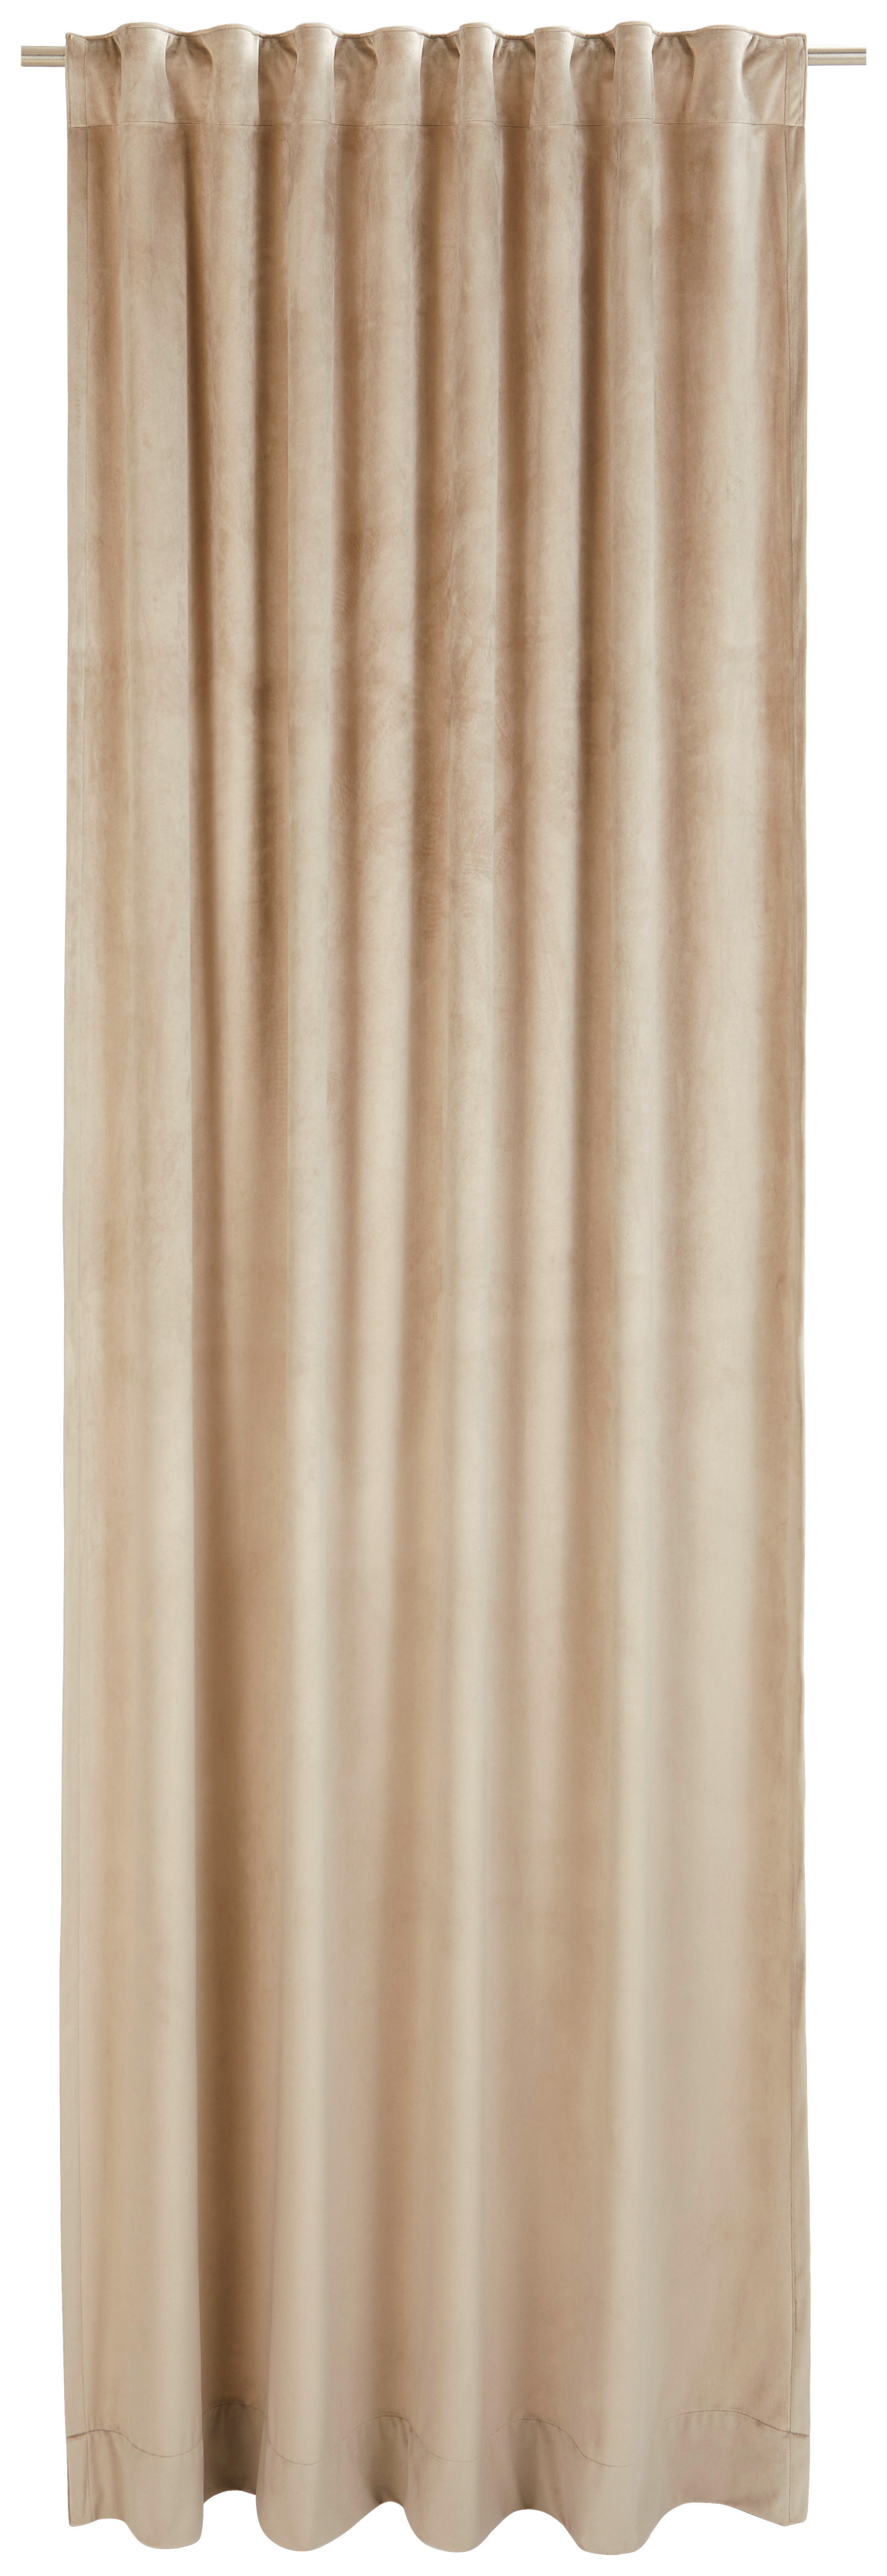 FERTIGVORHANG MR-Velvet blickdicht 130/250 cm   - Greige, Basics, Textil (130/250cm) - Musterring